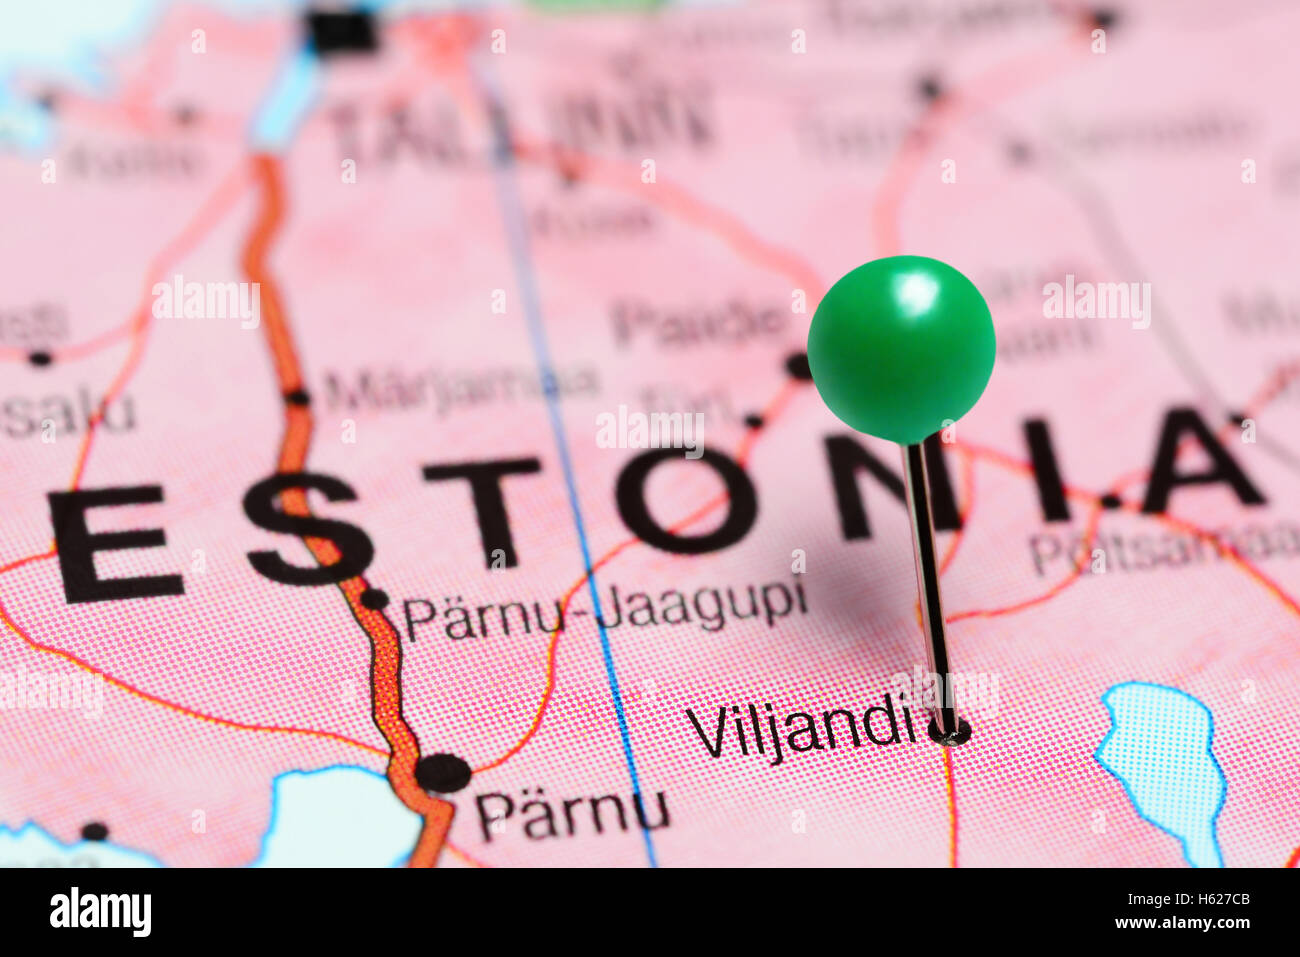 Viljandi pinned on a map of Estonia Stock Photo